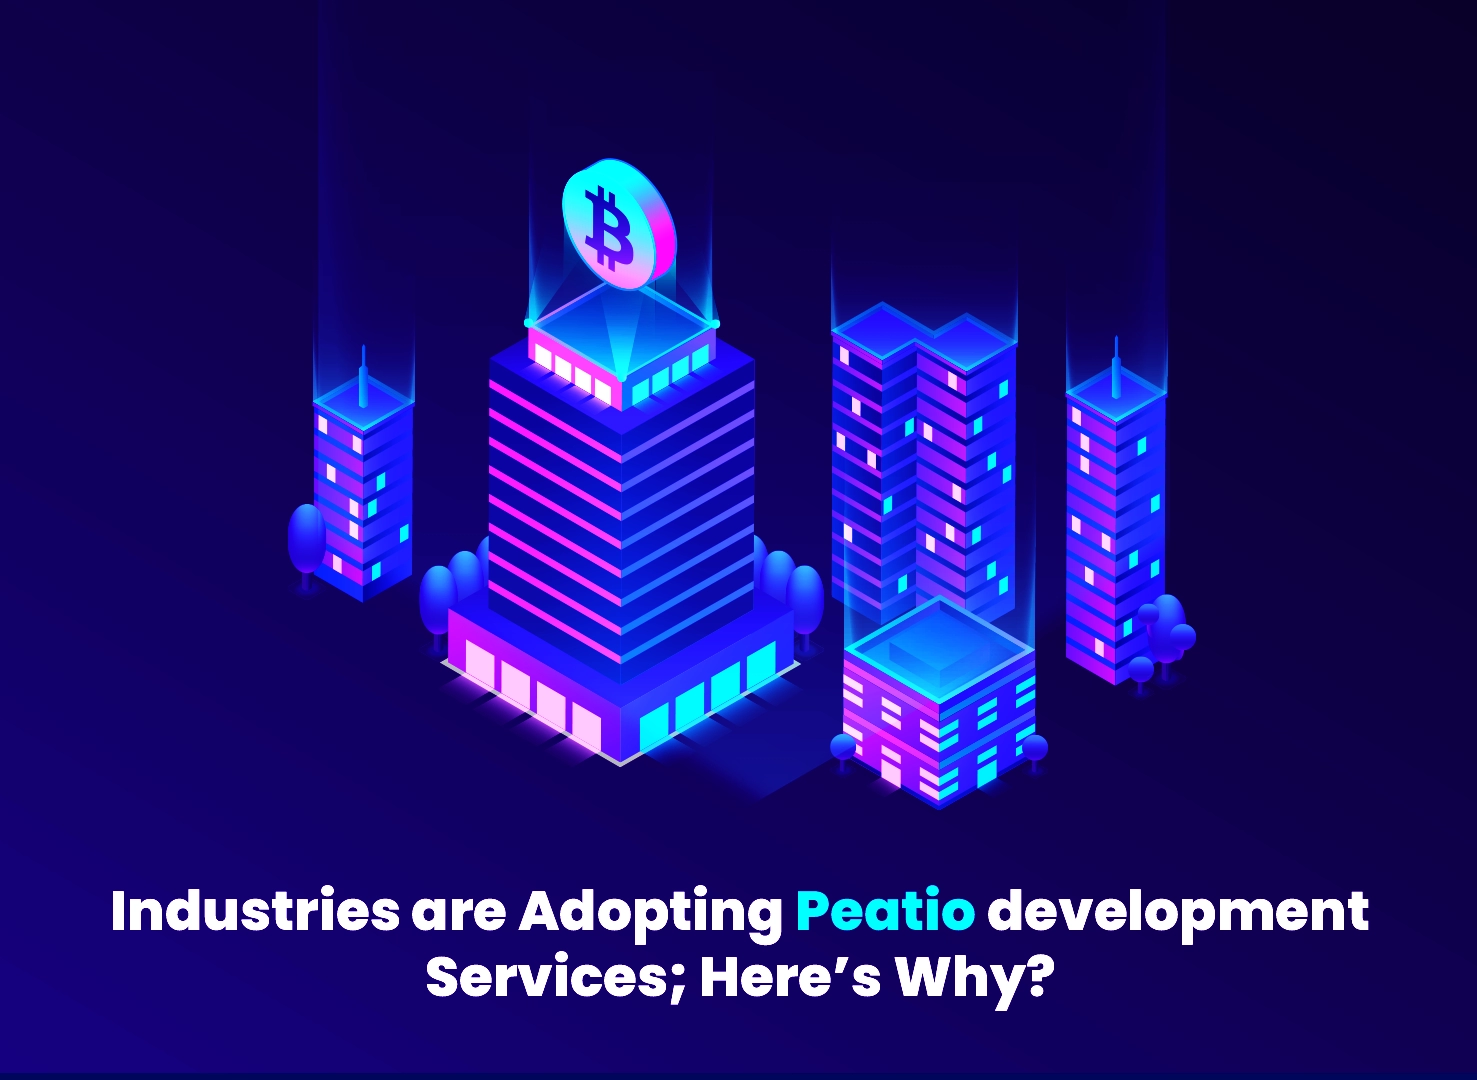 Peatio development Services